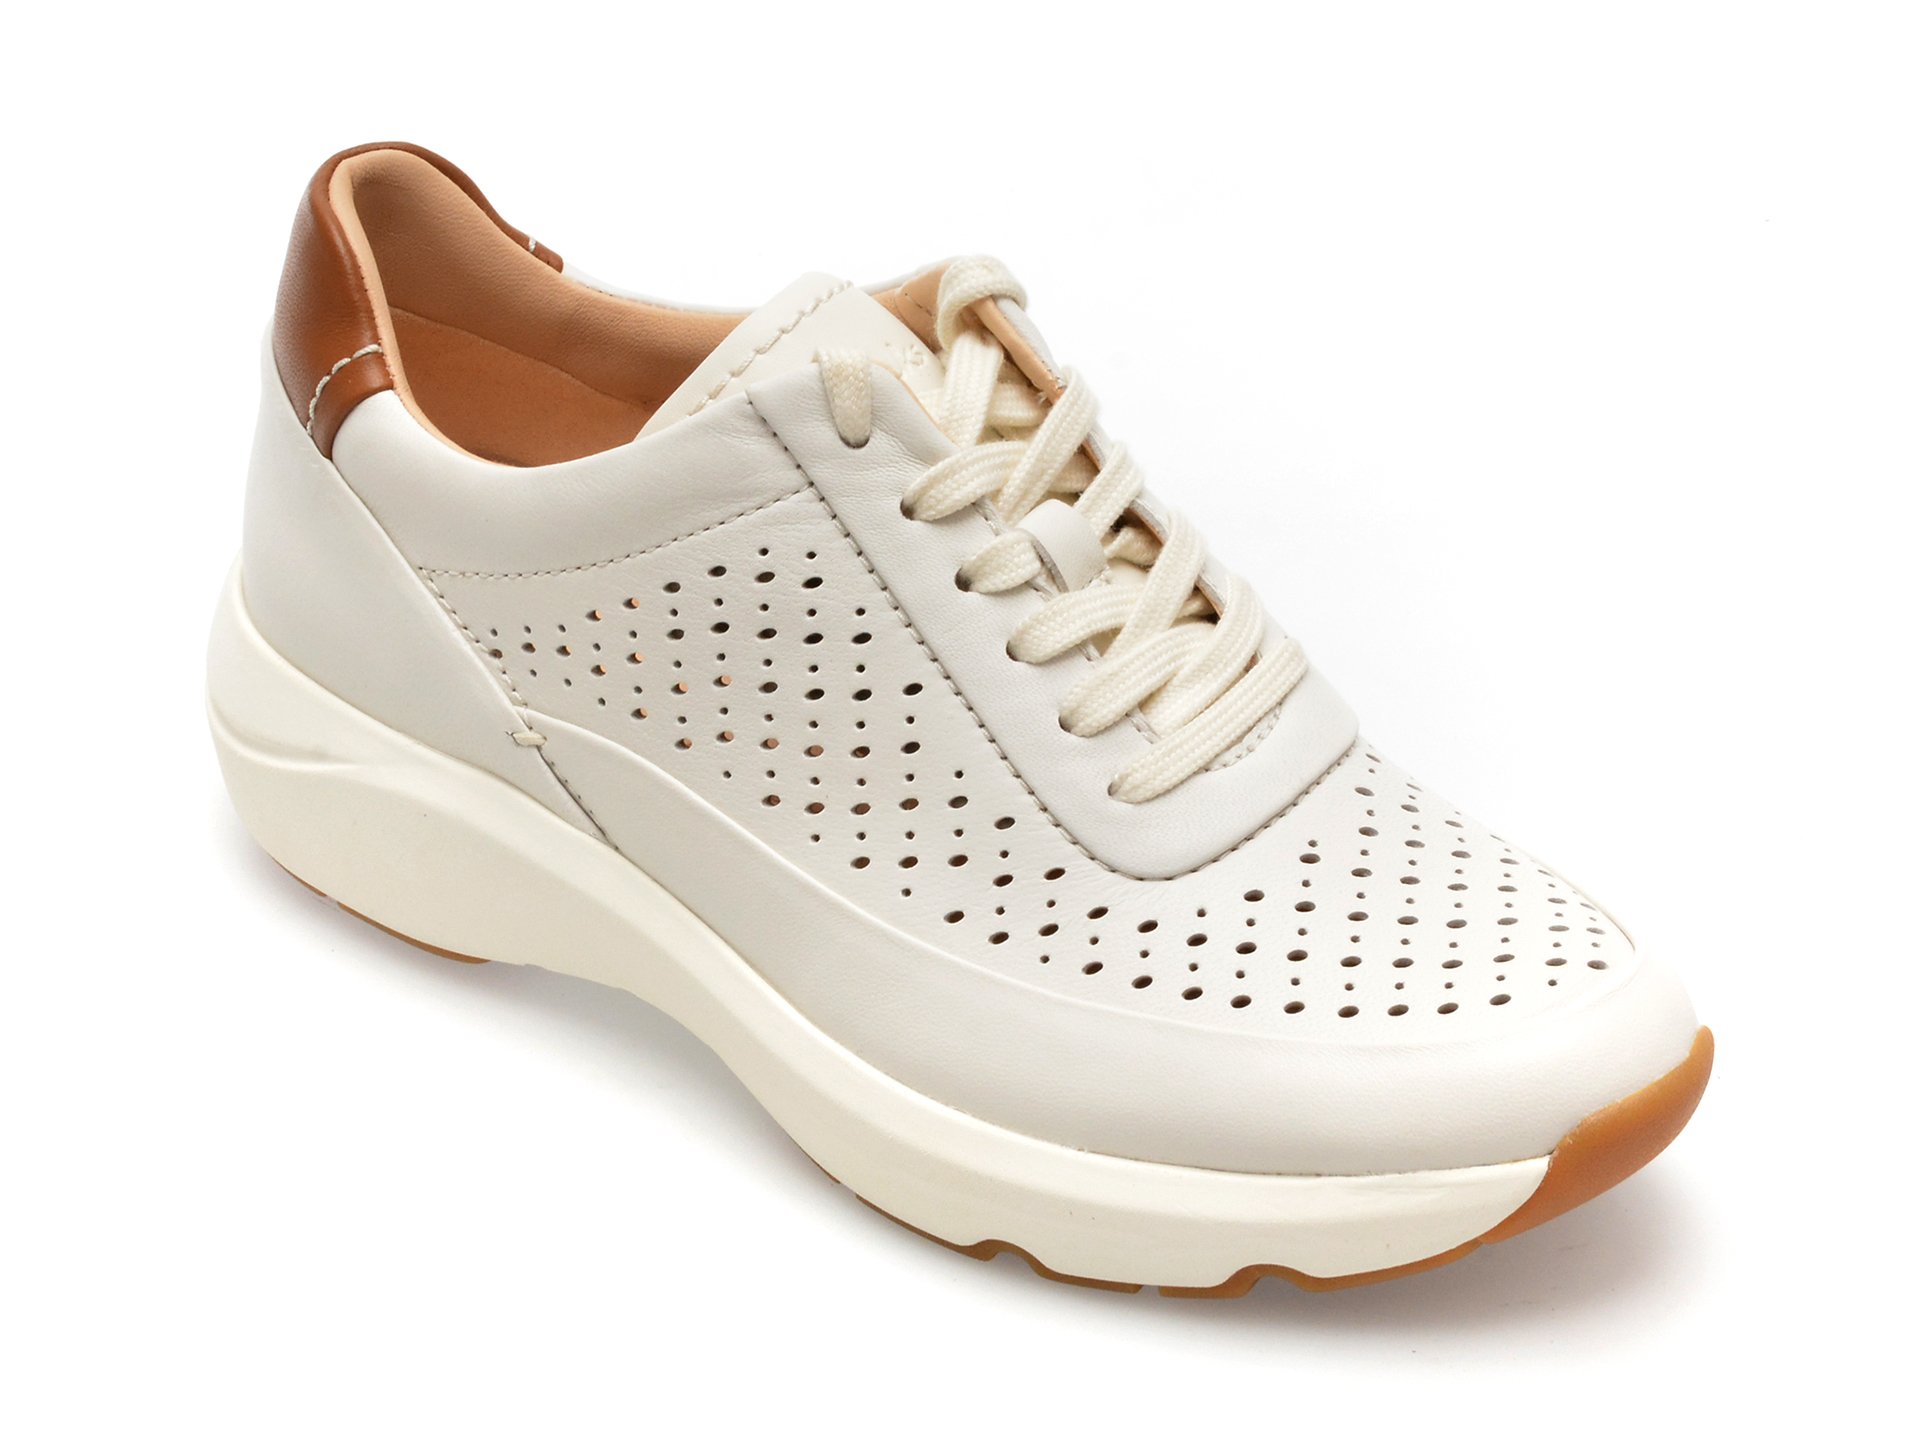 Pantofi CLARKS albi, TIVOGRA, din piele naturala